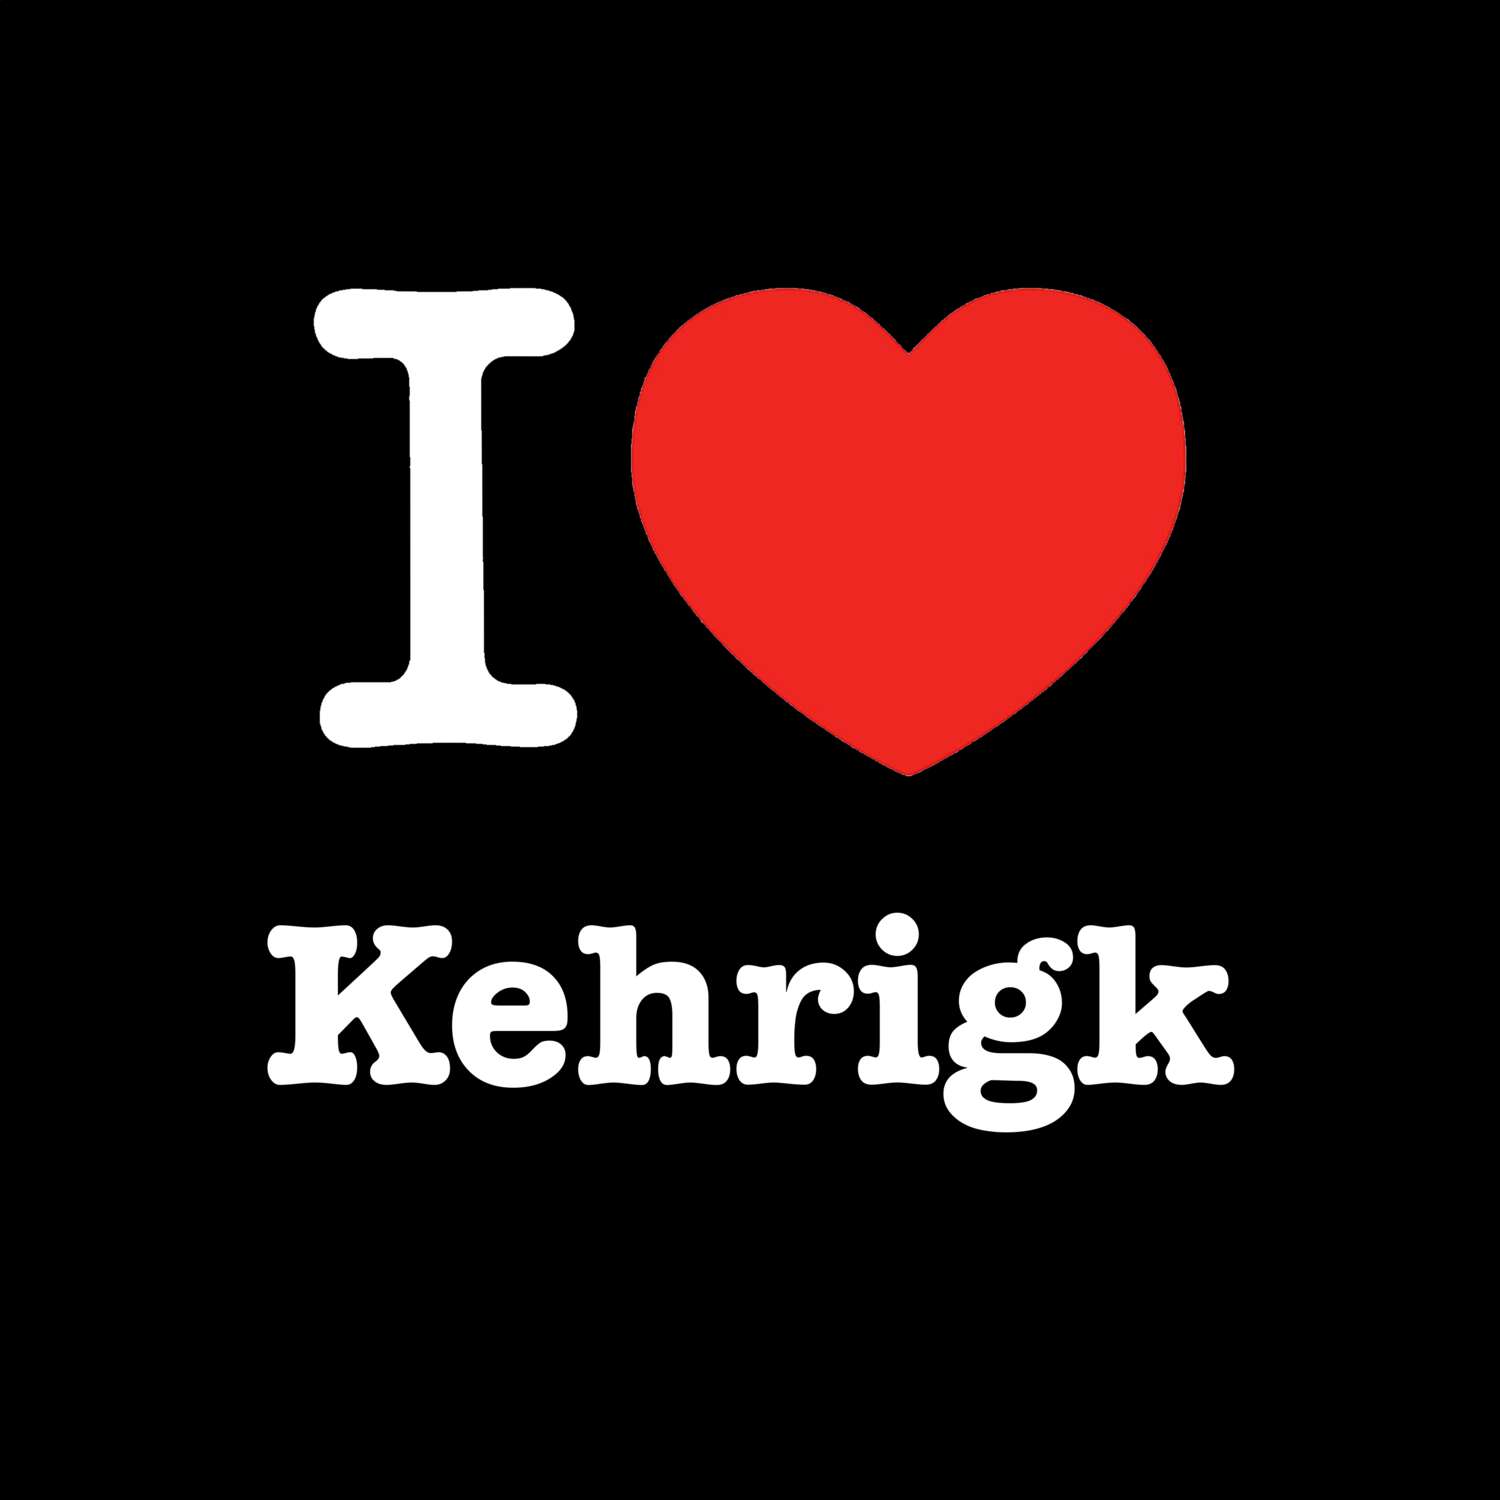 Kehrigk T-Shirt »I love«